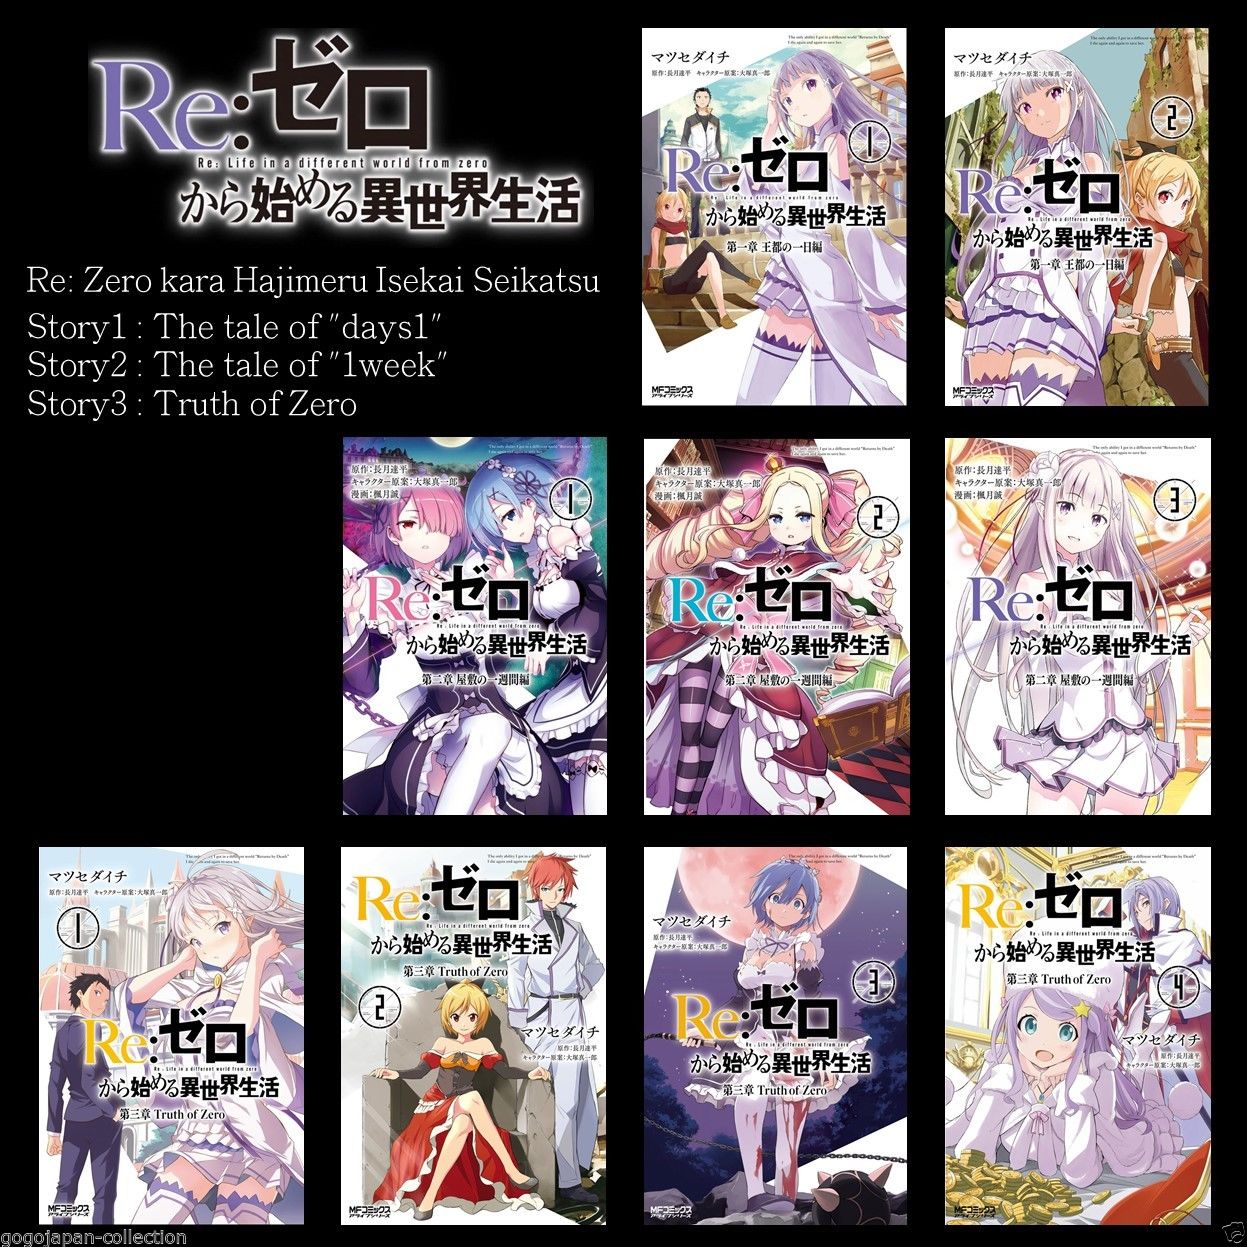 [ COMICS ] Re: Zero kara Hajimeru Isekai Seikatsu Story.1 & 2 & 3  9COMICS SET